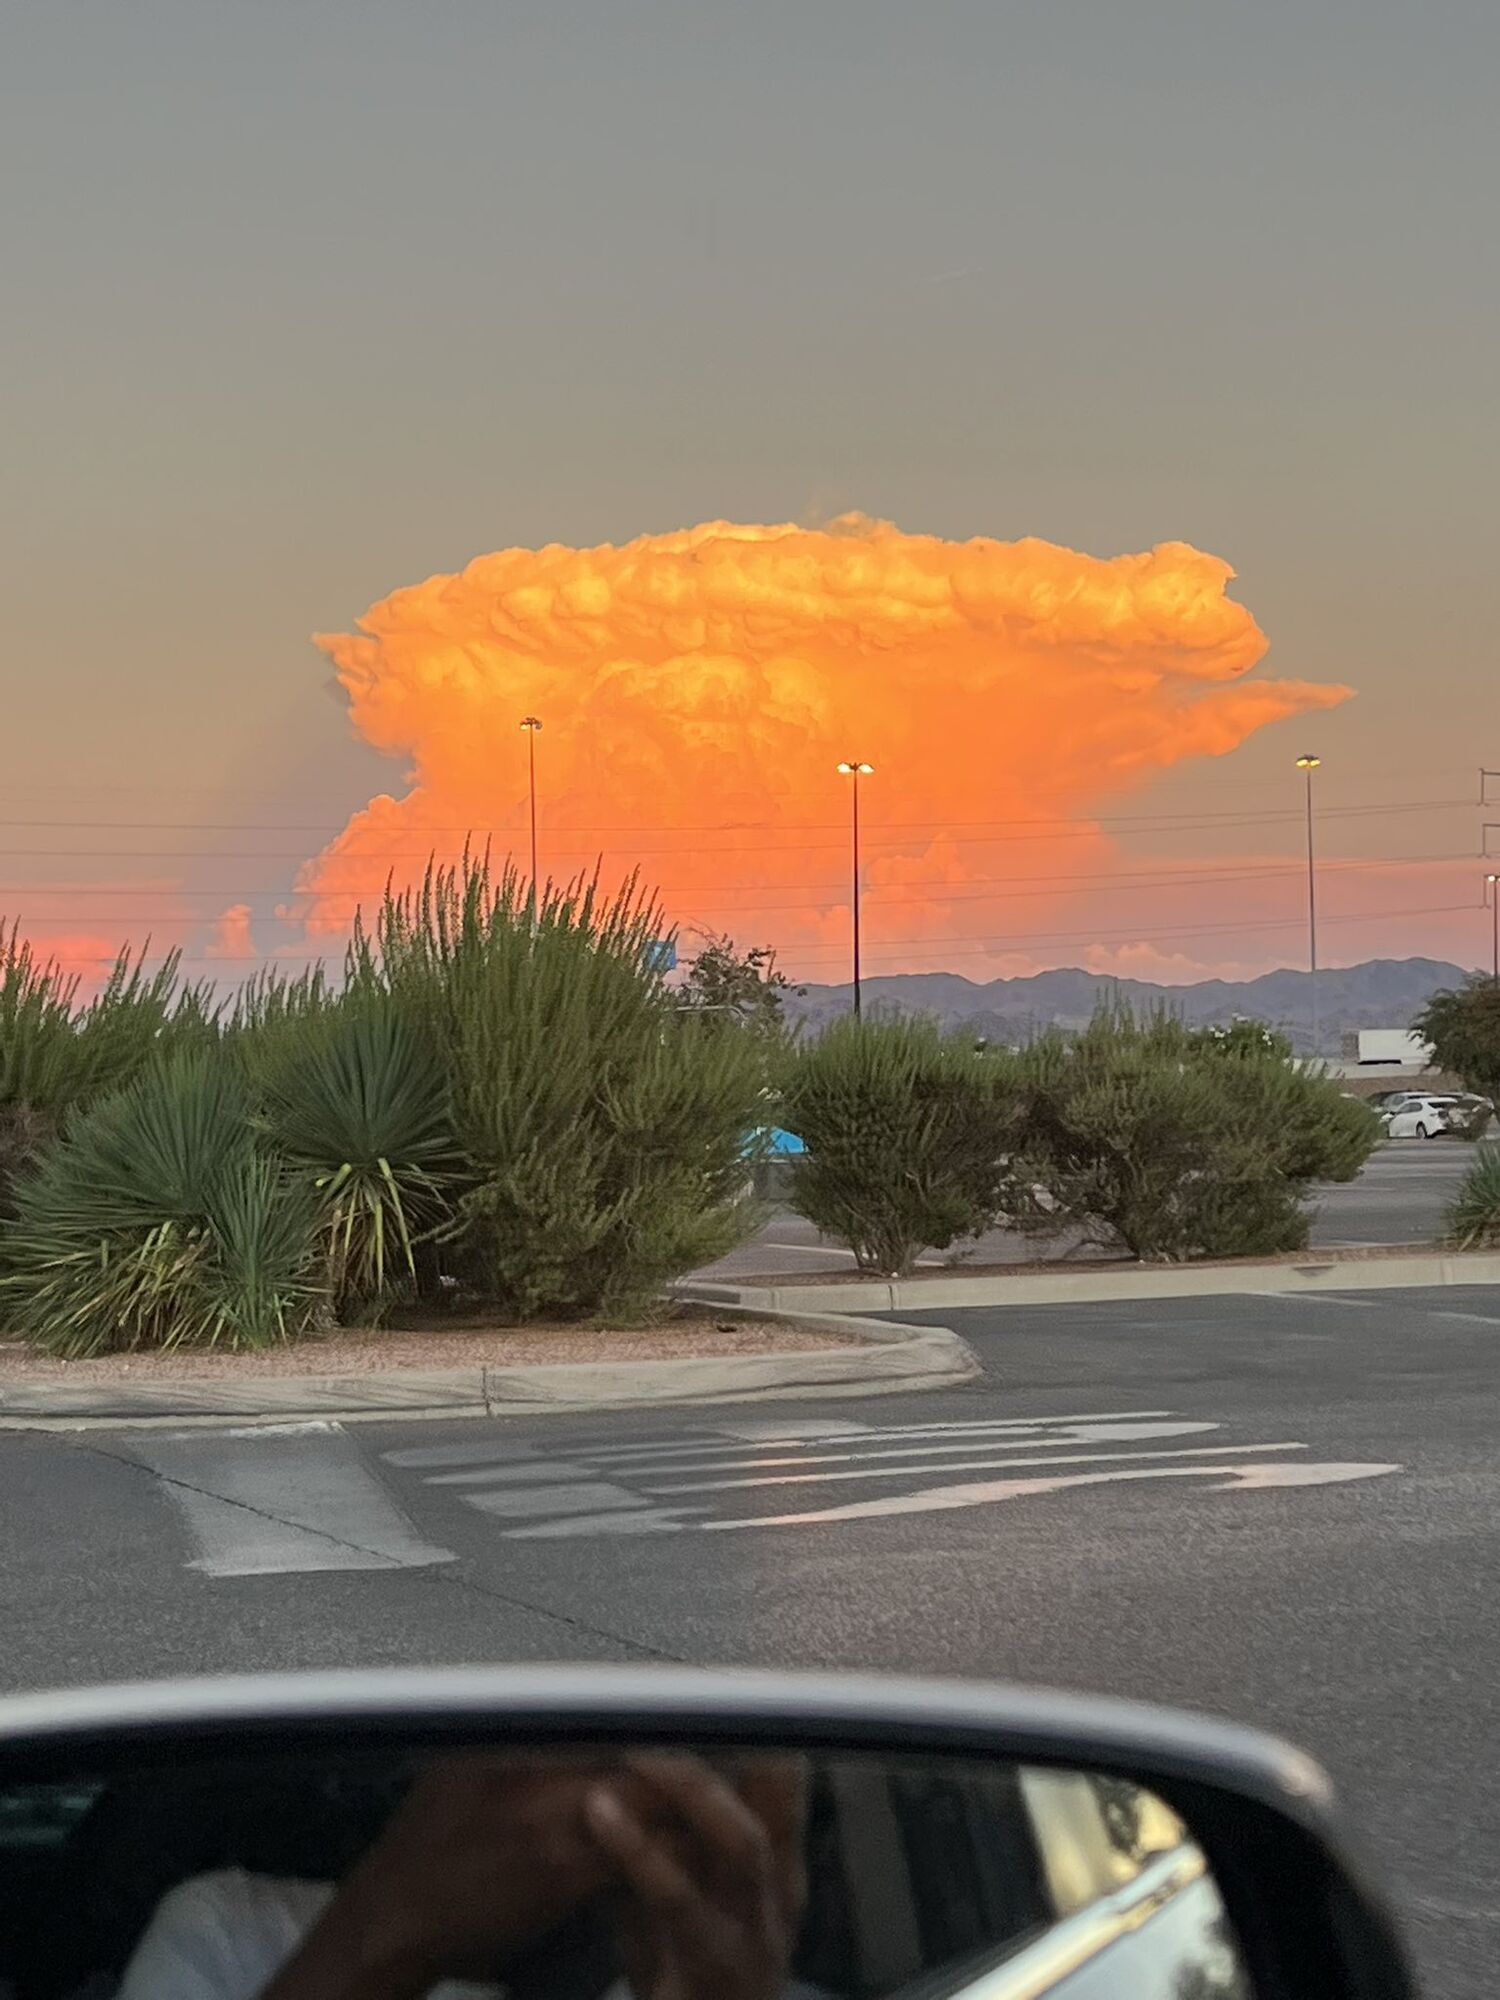 Chmura w kształcie ''grzyba nuklearnego'' przestraszyła mieszkańców Las Vegas. Zdjęcie